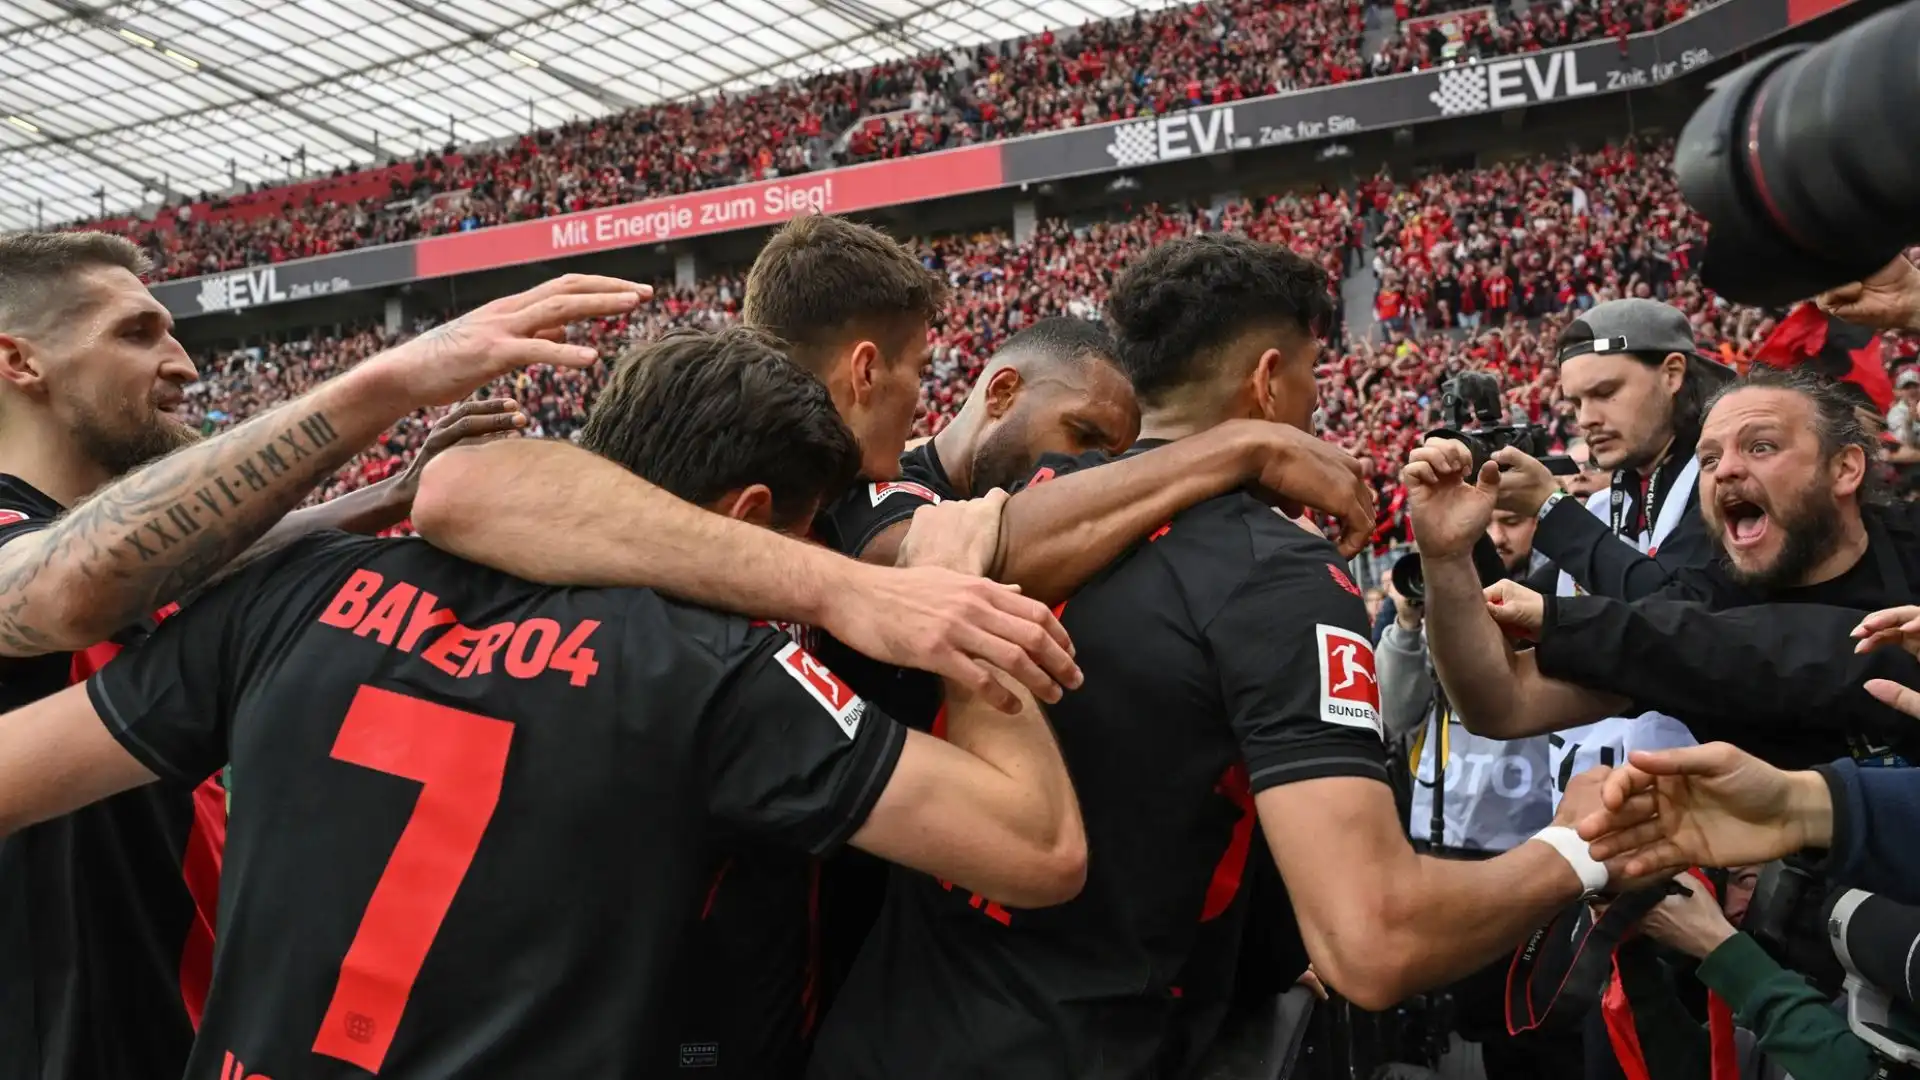 La squadra di Xabi Alonso ha trionfato per 5-0 contro il Werder Brema, conquistando il titolo